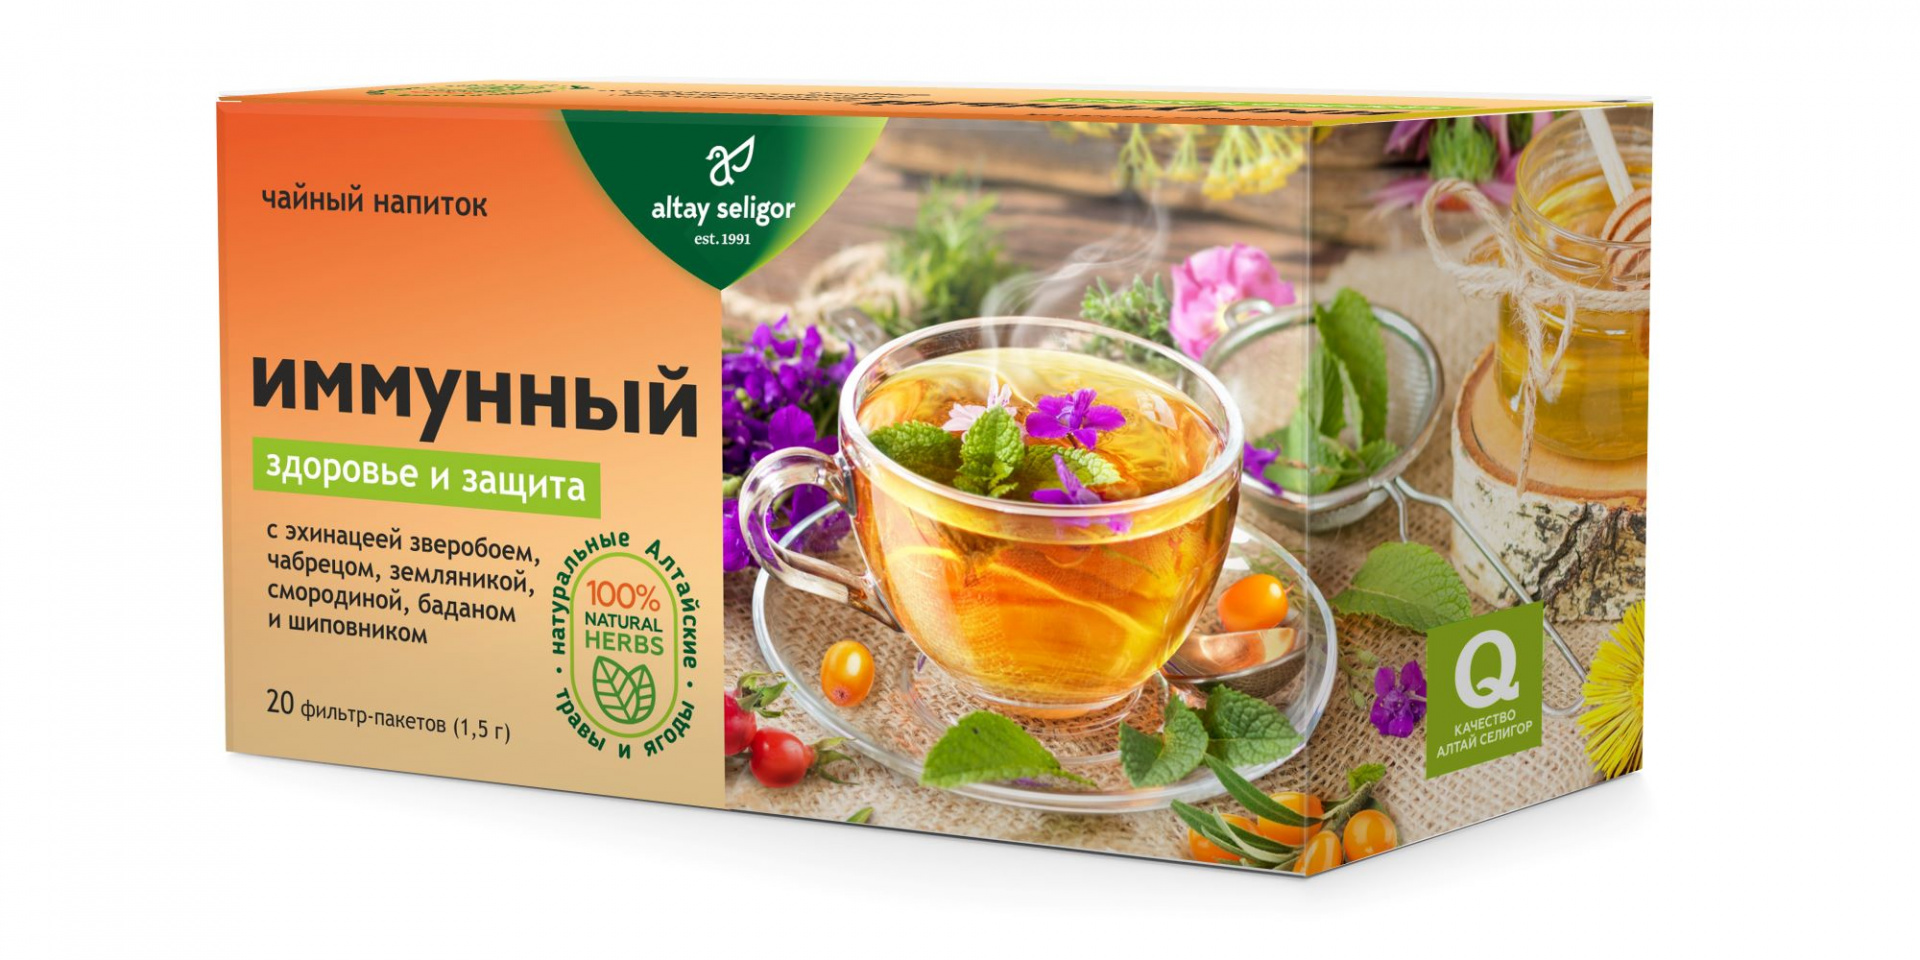 Травяной чай Иммунный, 20 ф-п*1,5 гр, Алтай Селигор травяной чай ясный взгляд 20 ф п 1 5 гр алтай селигор